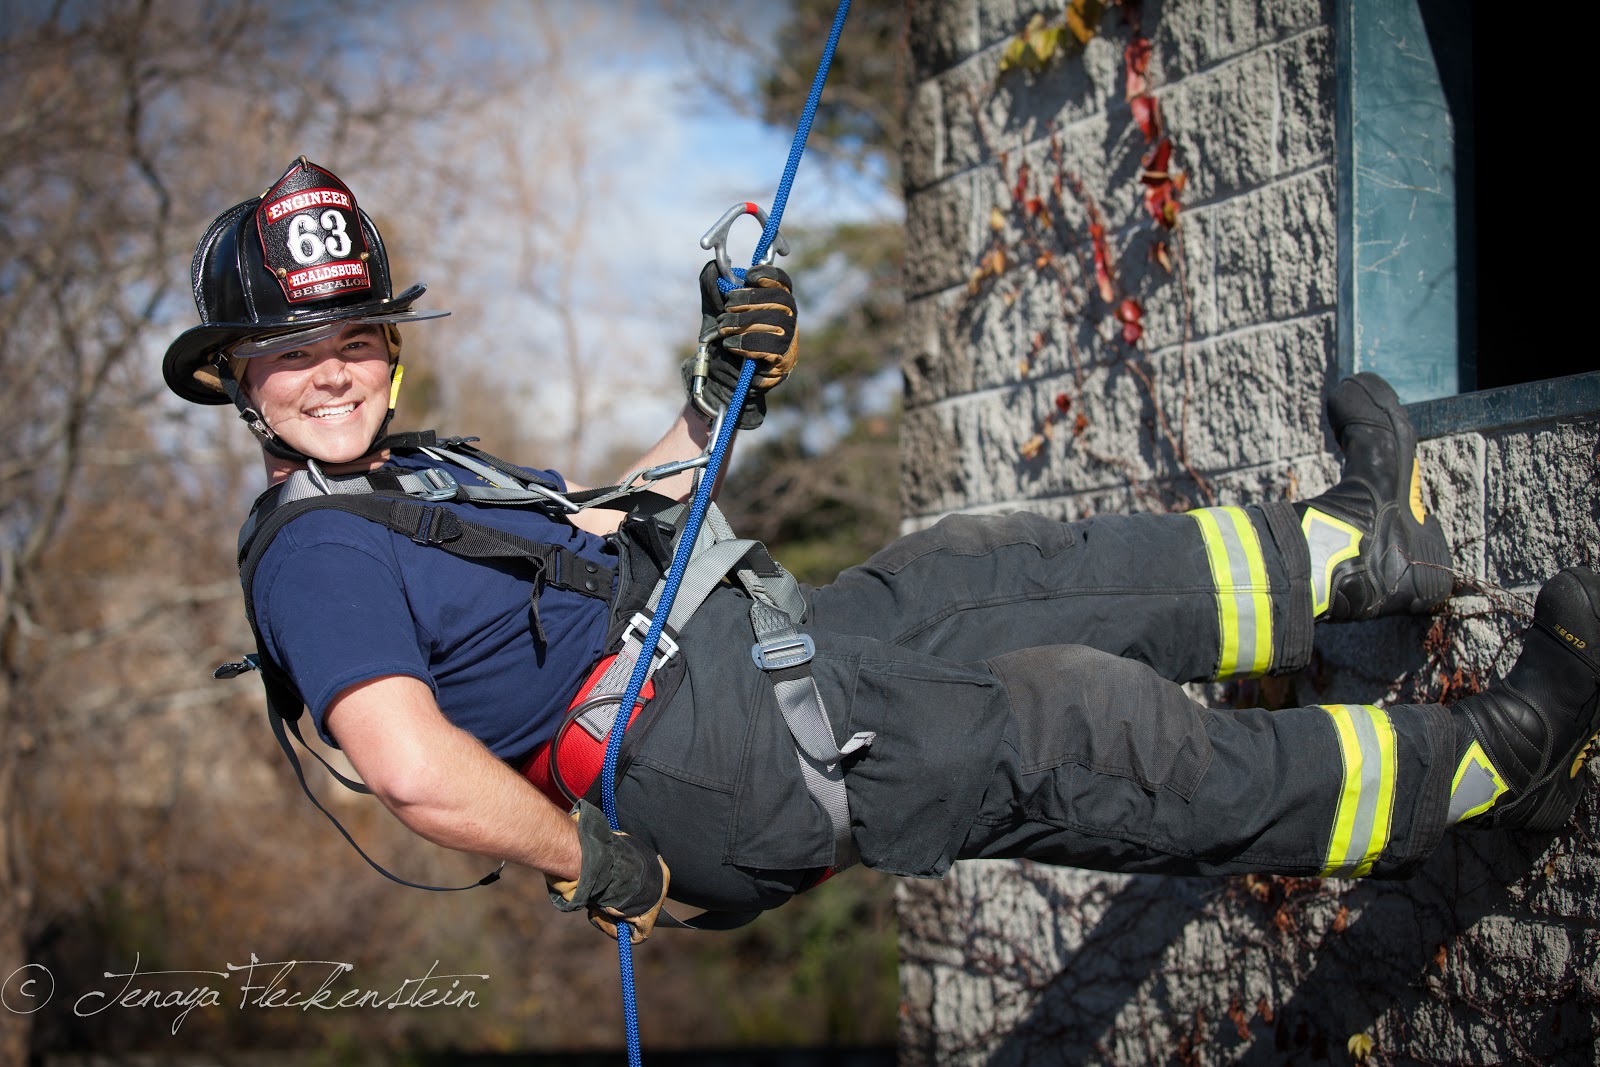 tenaya fleckenstein photography: Firefighter Calendar Shoot 2013